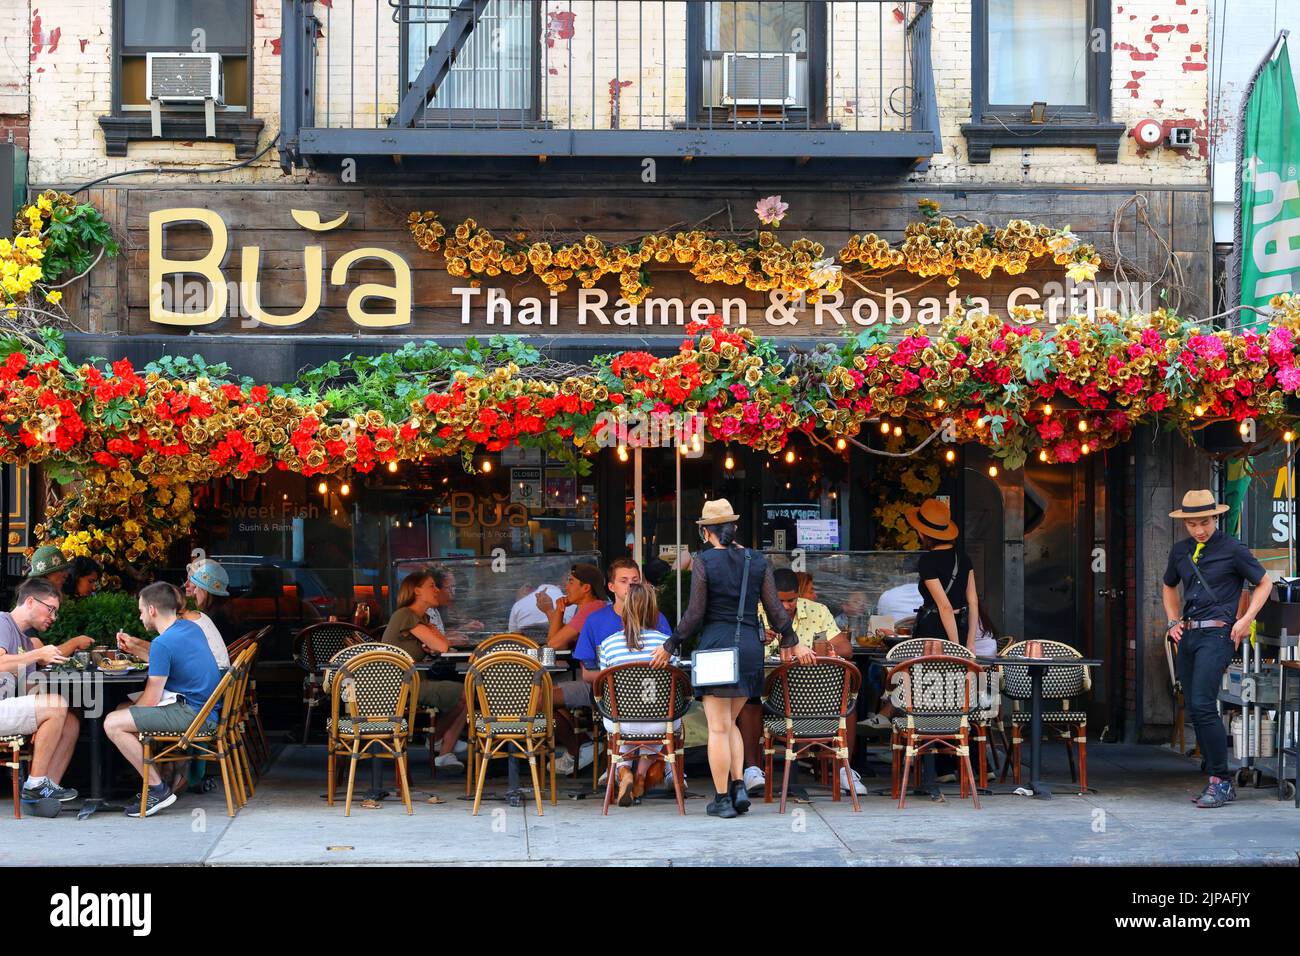 Bua Thai Ramen & Robata Grill, 1611 2nd Ave, Nueva York, Nueva York, Nueva York, foto de un restaurante tailandés y japonés en el Upper East Side de Manhattan Foto de stock